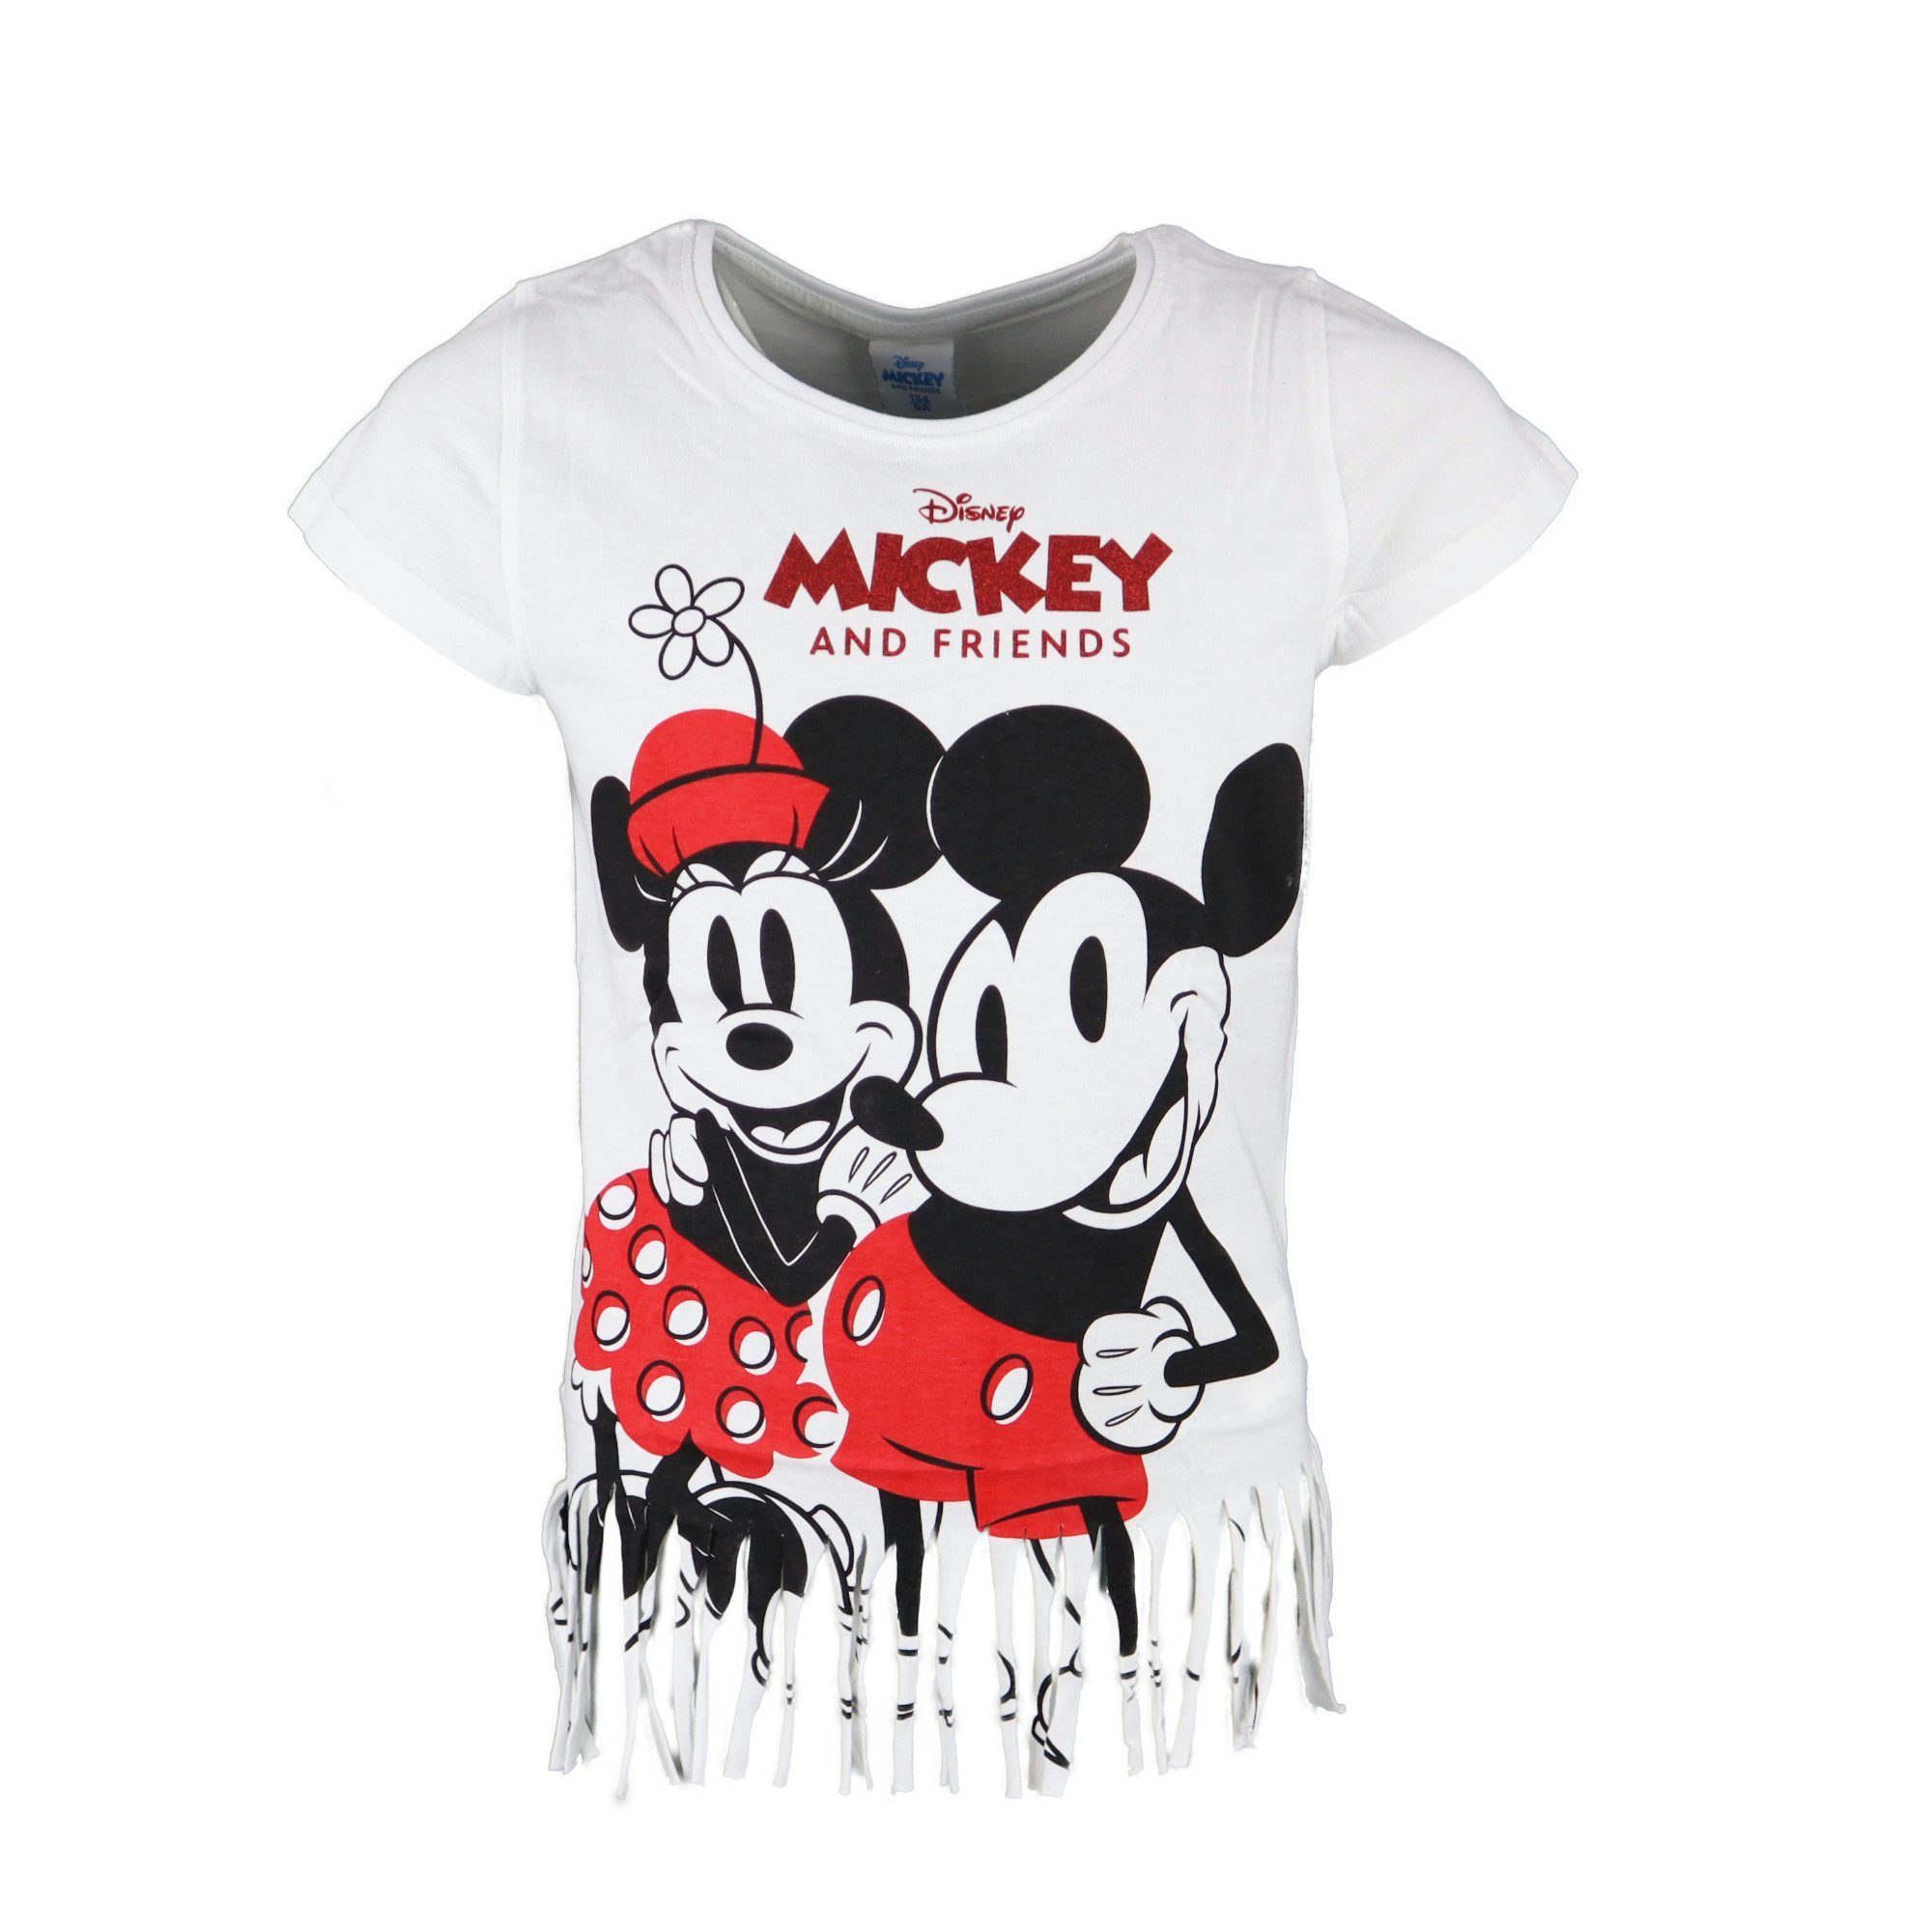 Gr. Print-Shirt Mouse 134 T-Shirt oder Disney Grau Mädchen Weiß und Jugend Minnie Mickey Mickey bis 164, Maus